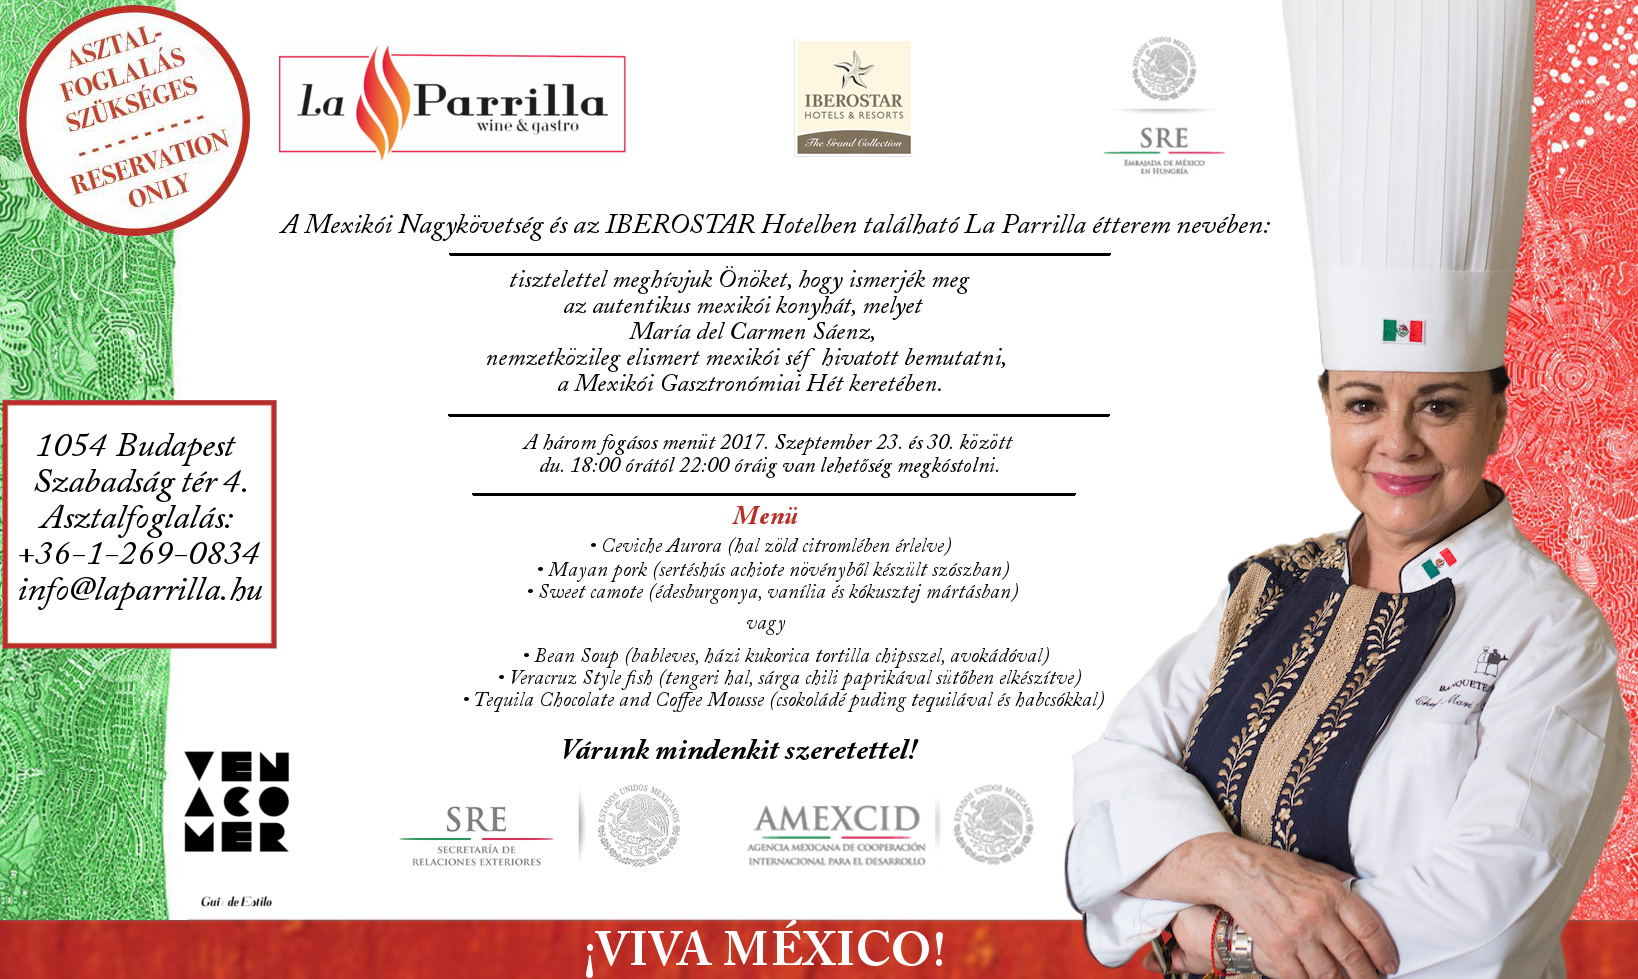 María del Carmen Sáenz - Mexikói Nagykövetség meghívó